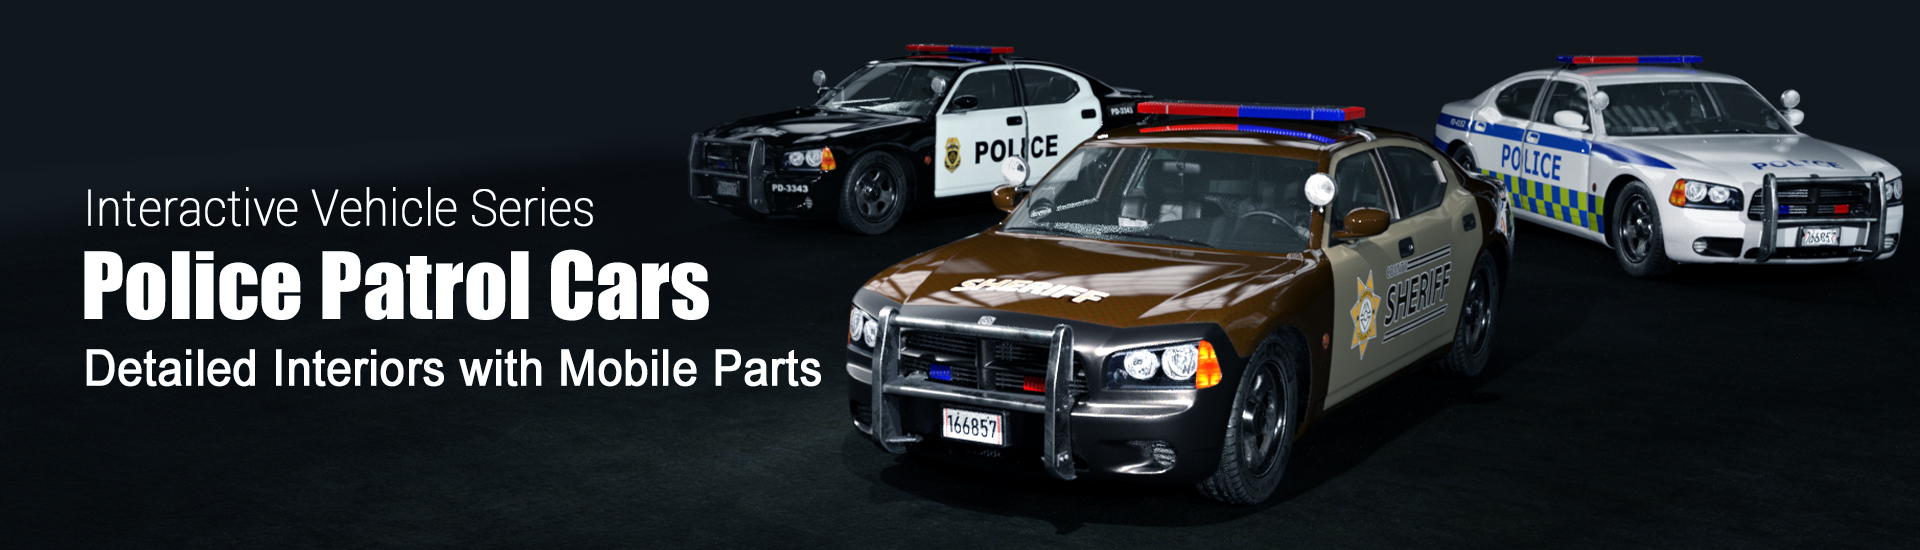 police car-3D police car